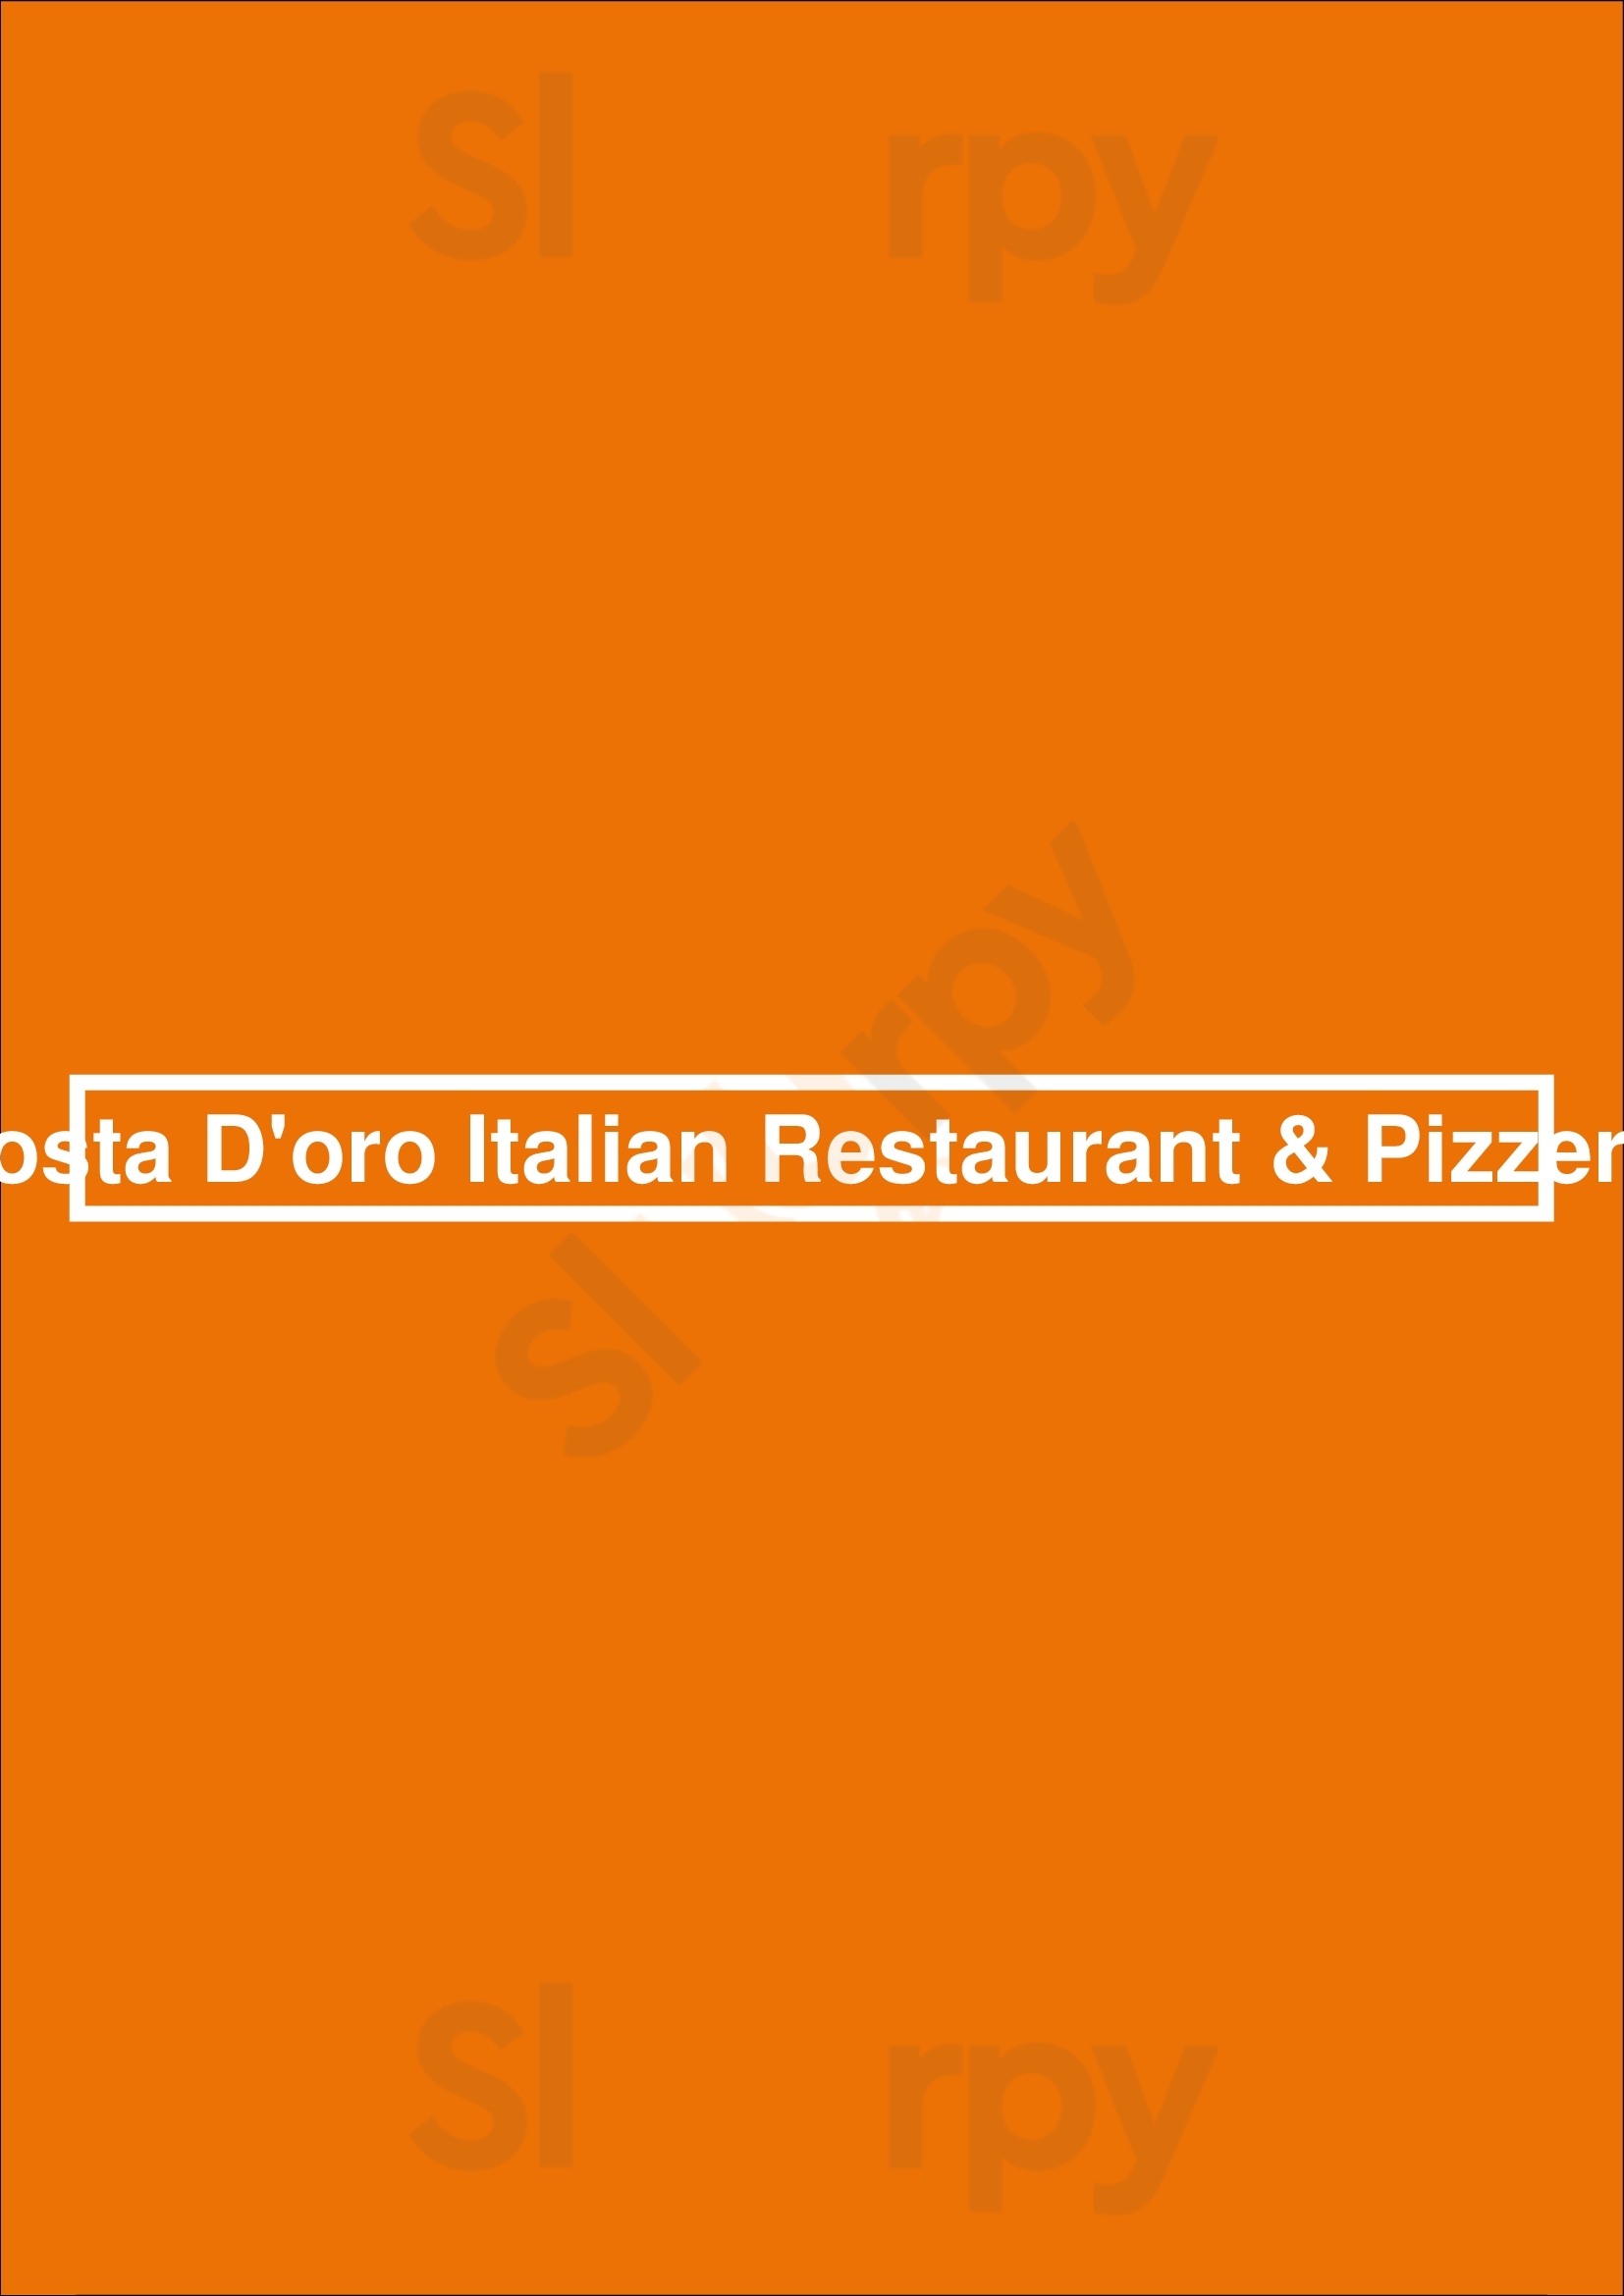 Costa D'oro Italian Restaurant & Pizzeria Surfers Paradise Menu - 1